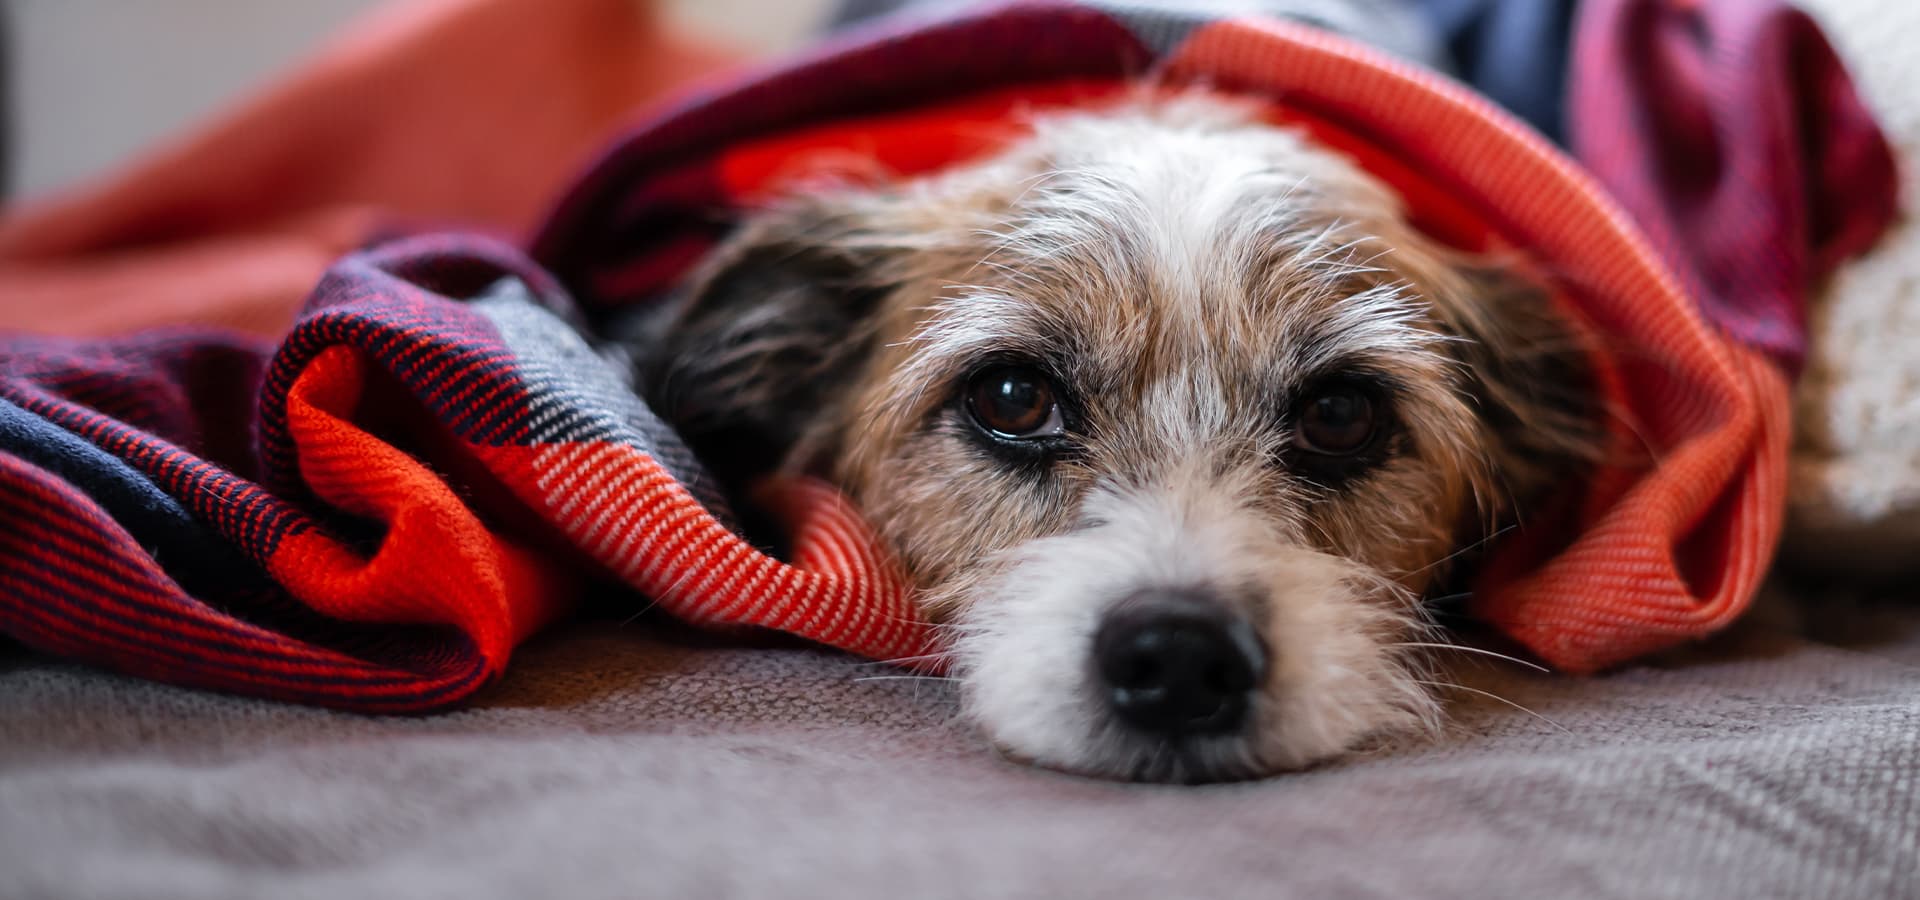 Hund liegt unter einer Decke und guckt traurig